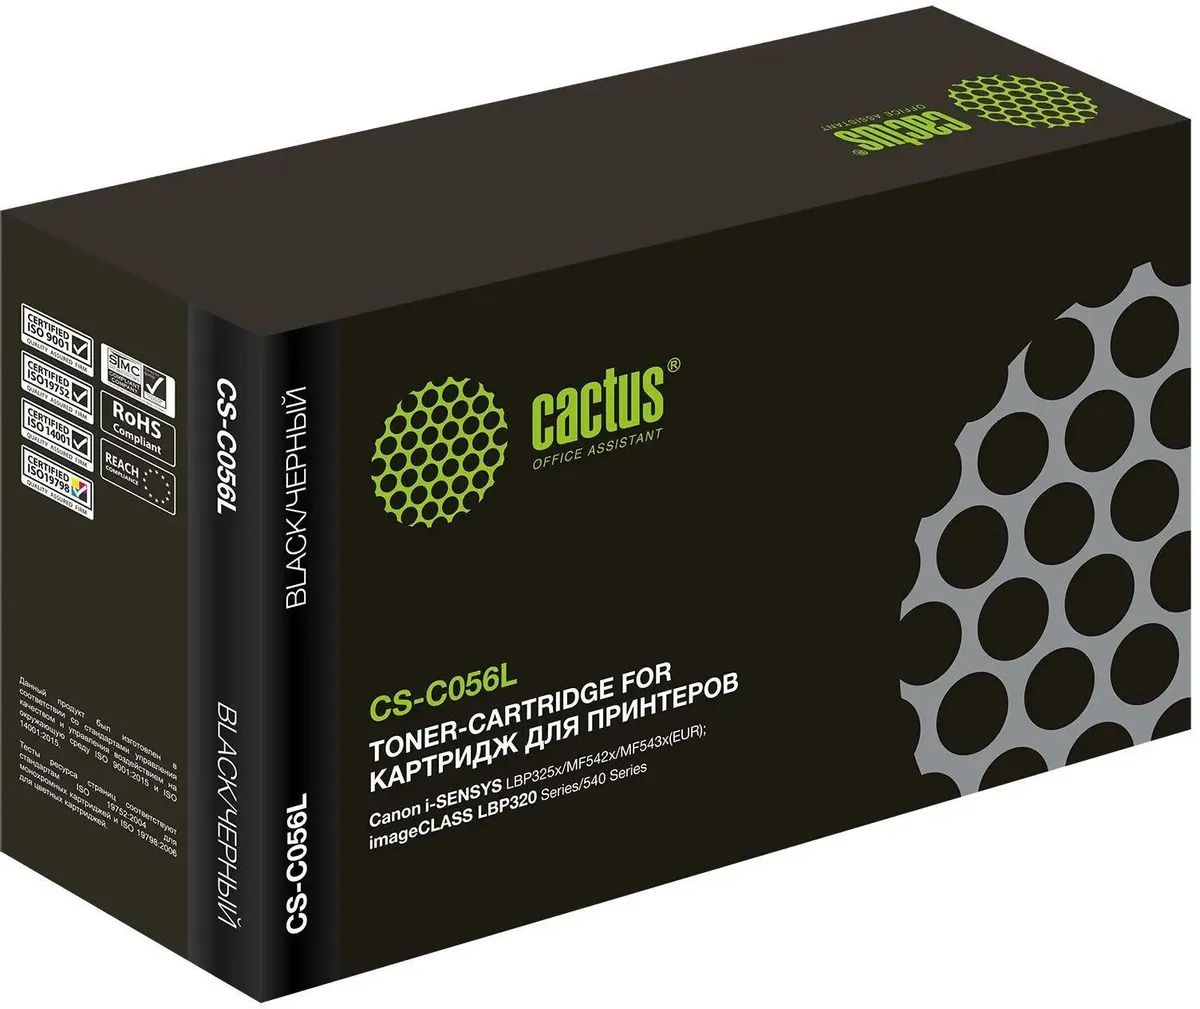 Картридж лазерный Cactus CS-C056L 056 L черный (5100стр.) для Canon imageCLASS LBP320 Series/540 Series картридж cactus cs c703 black для canon lbp2900 3000 series 2000 стр